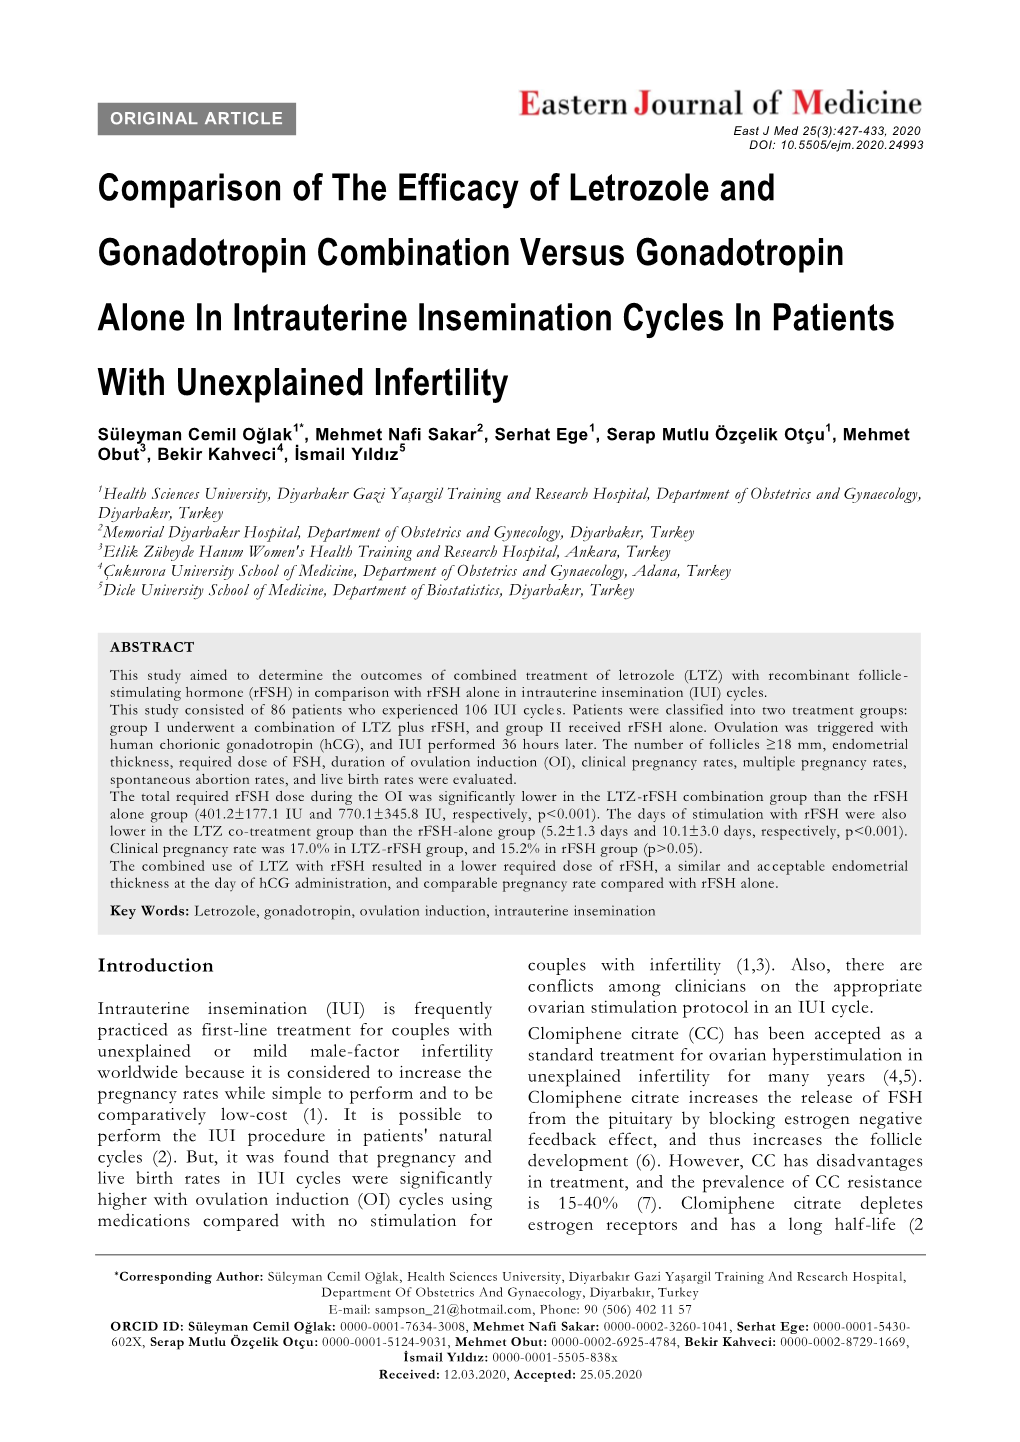 Comparison of the Efficacy of Letrozole and Gonadotropin Combination Versus Gonadotropin Alone in Intrauterine Insemination Cycl